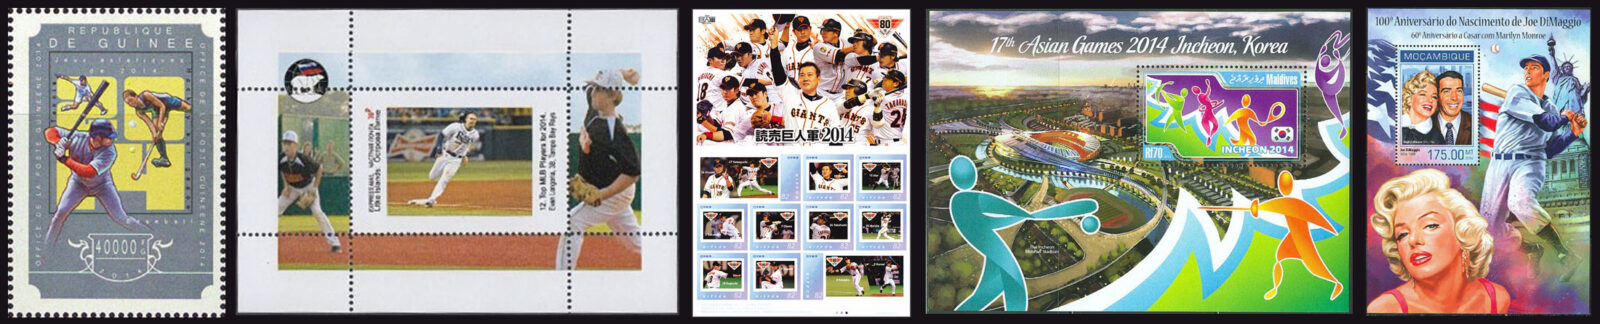 2014 Baseball Postage Stamps header